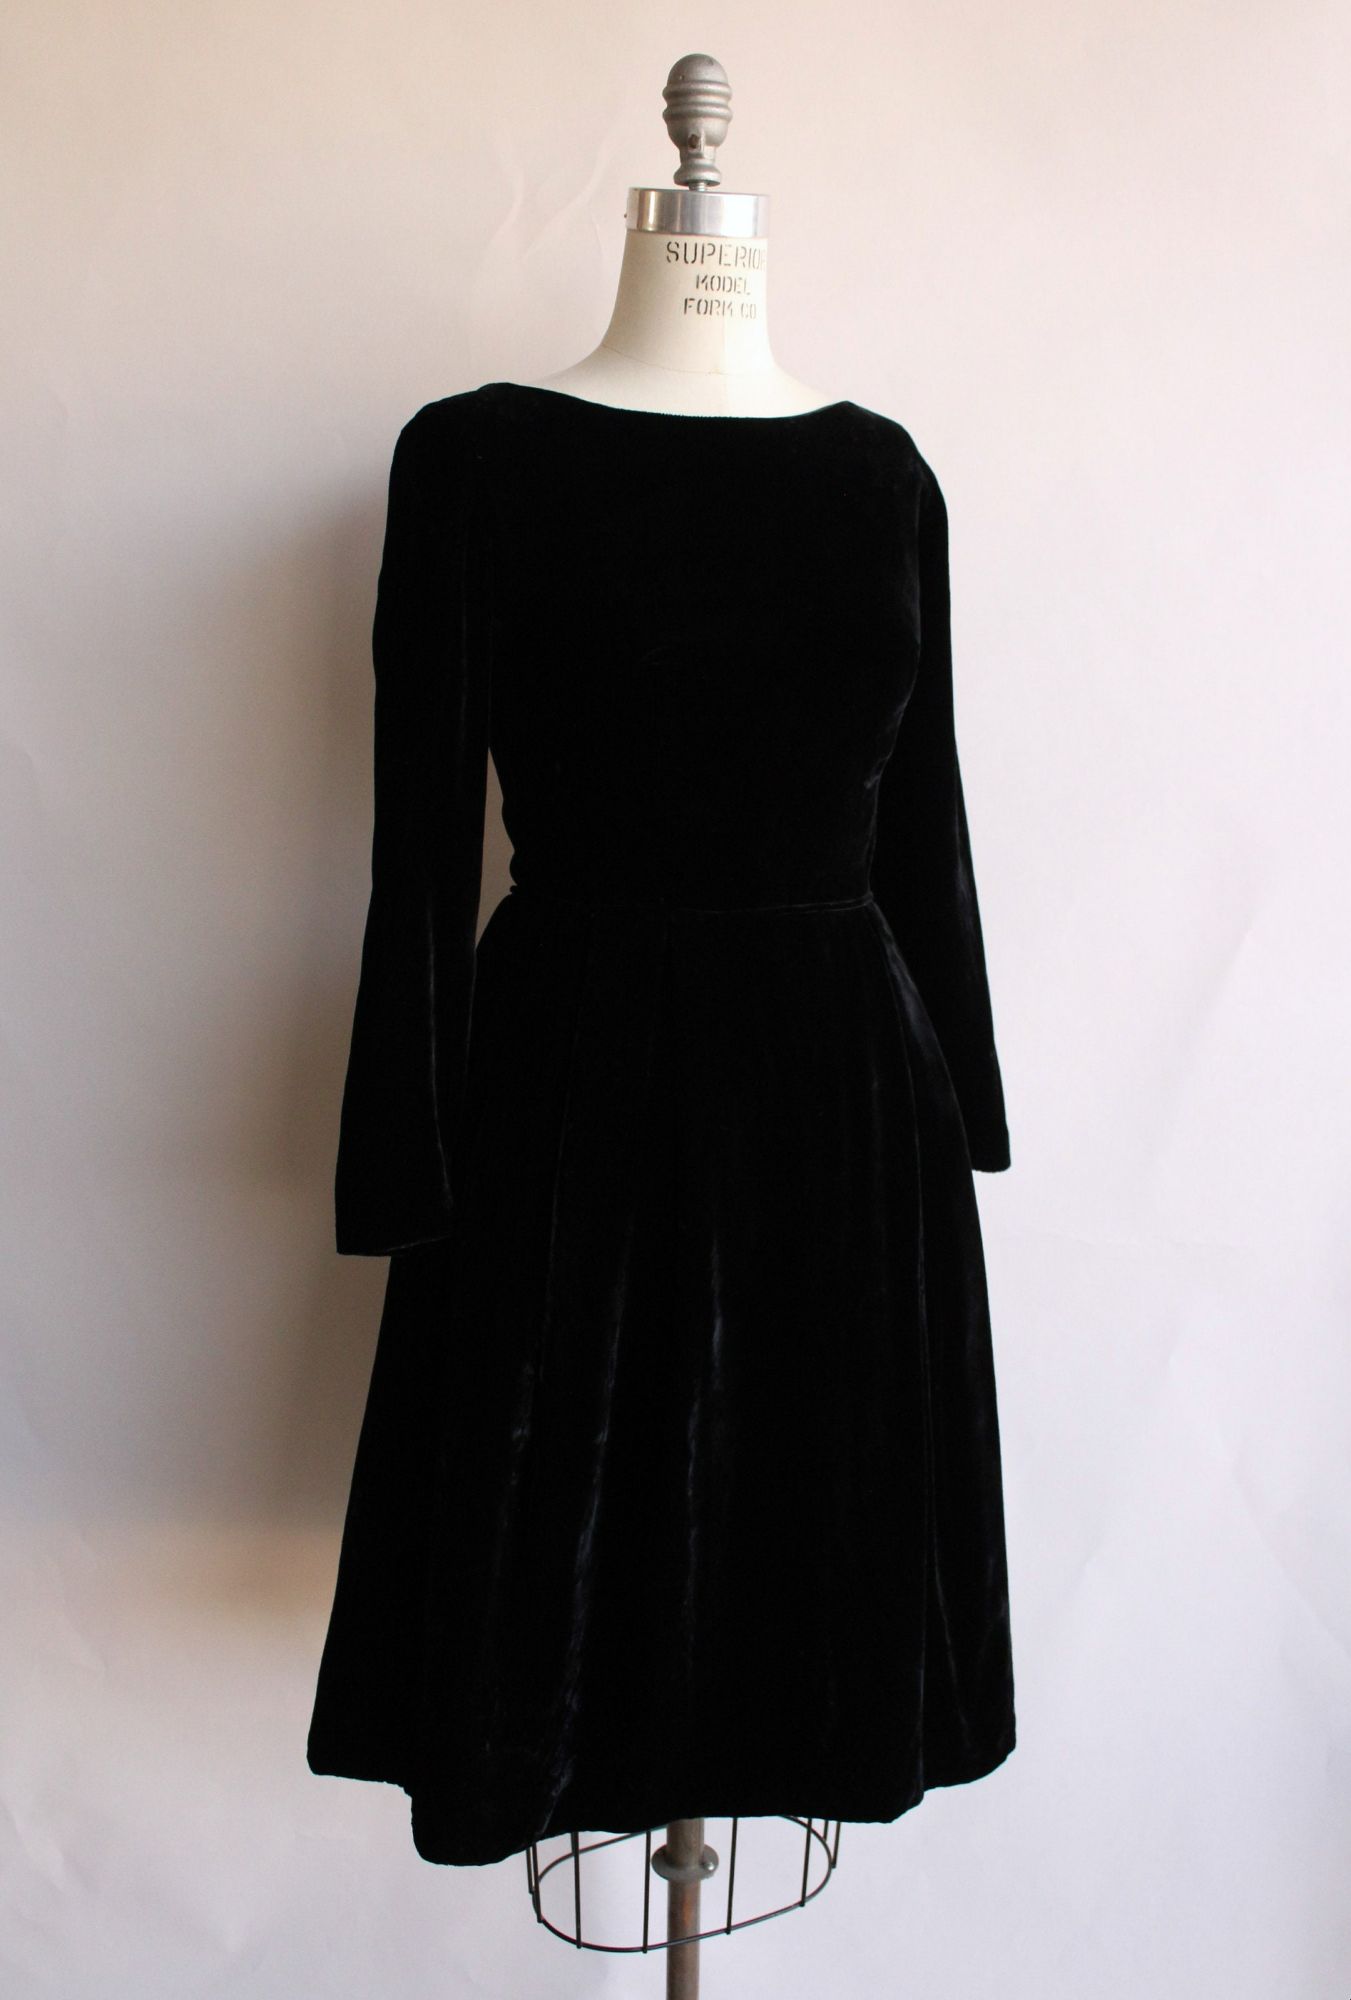 Vintage 1950s Dress in Black Velvet with Pellon Lining